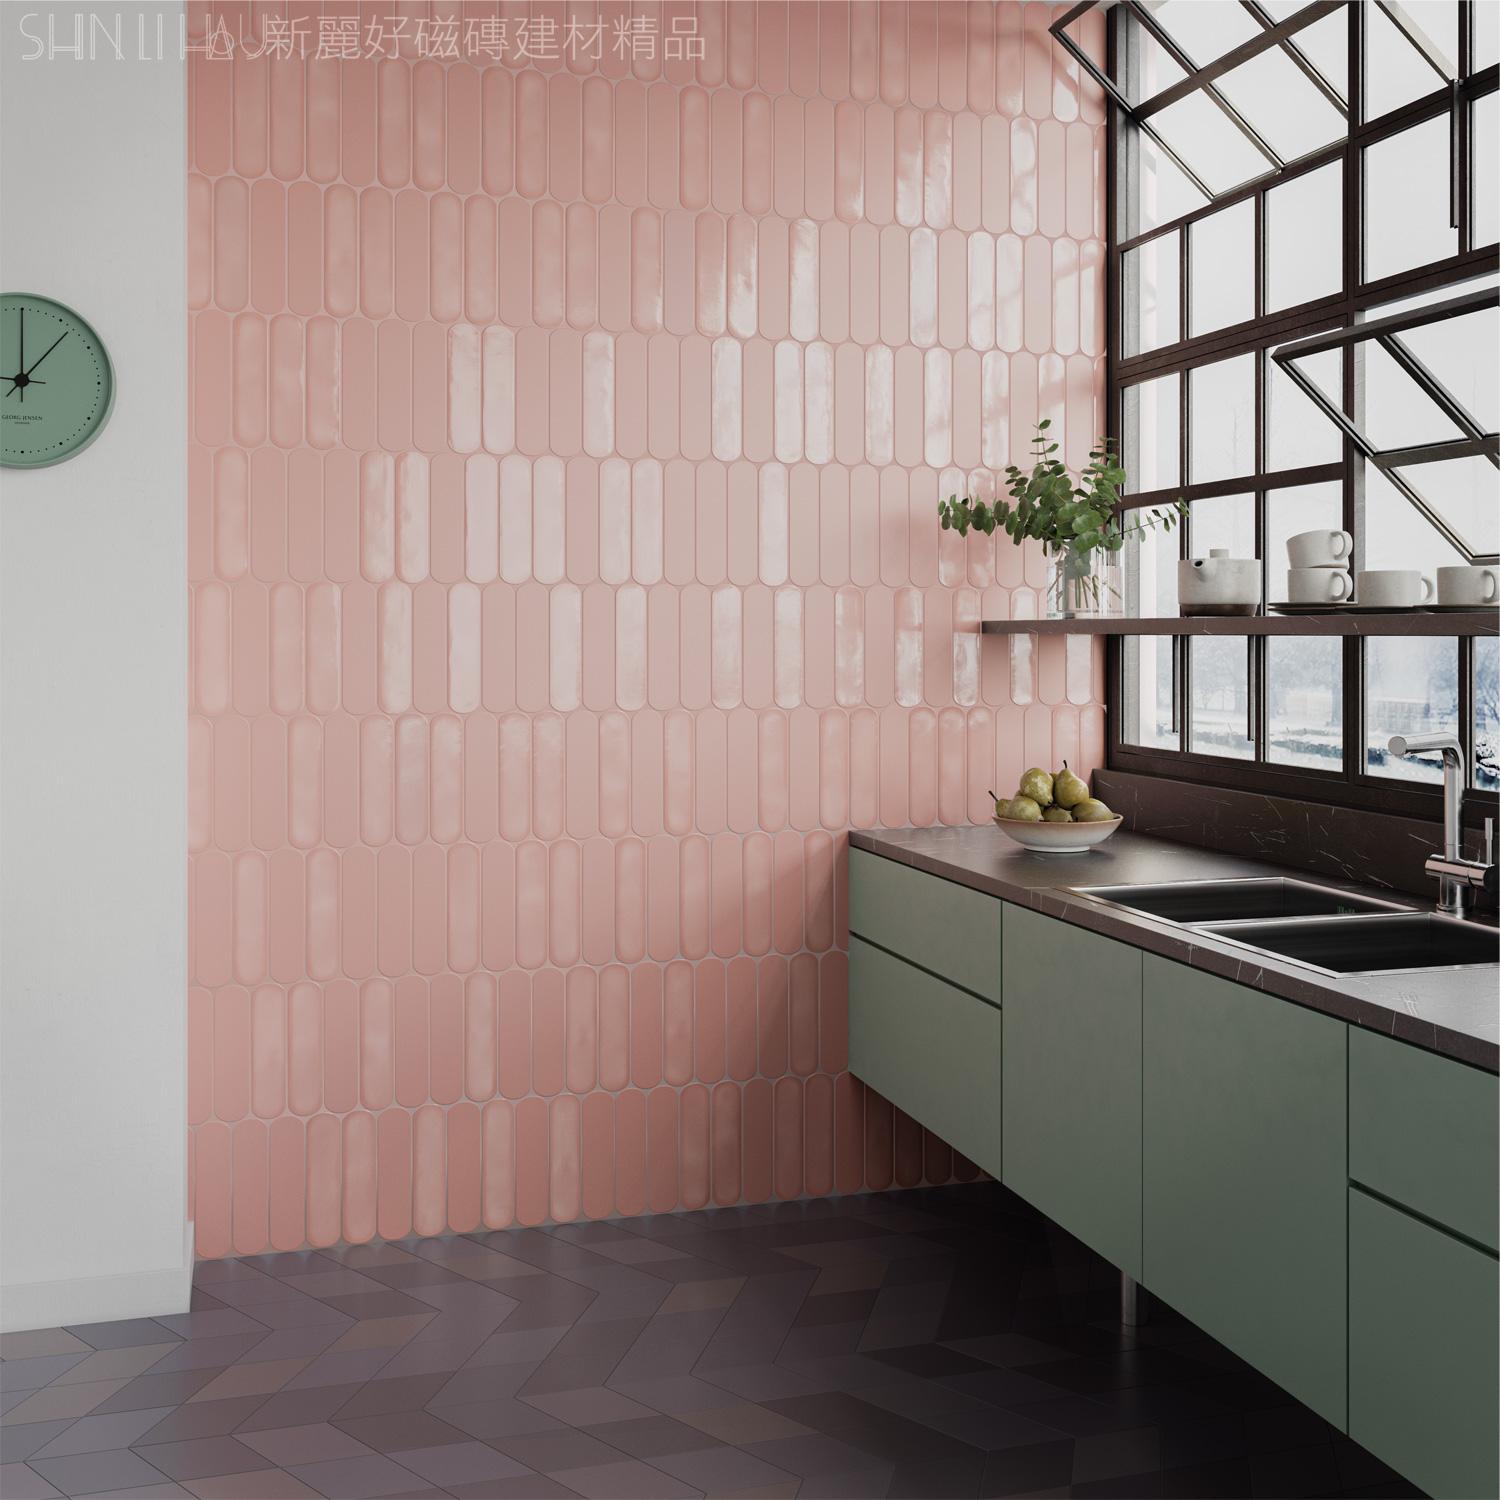 地鐵磚-閣蕾雅壁磚-粉紅詳樣式圖